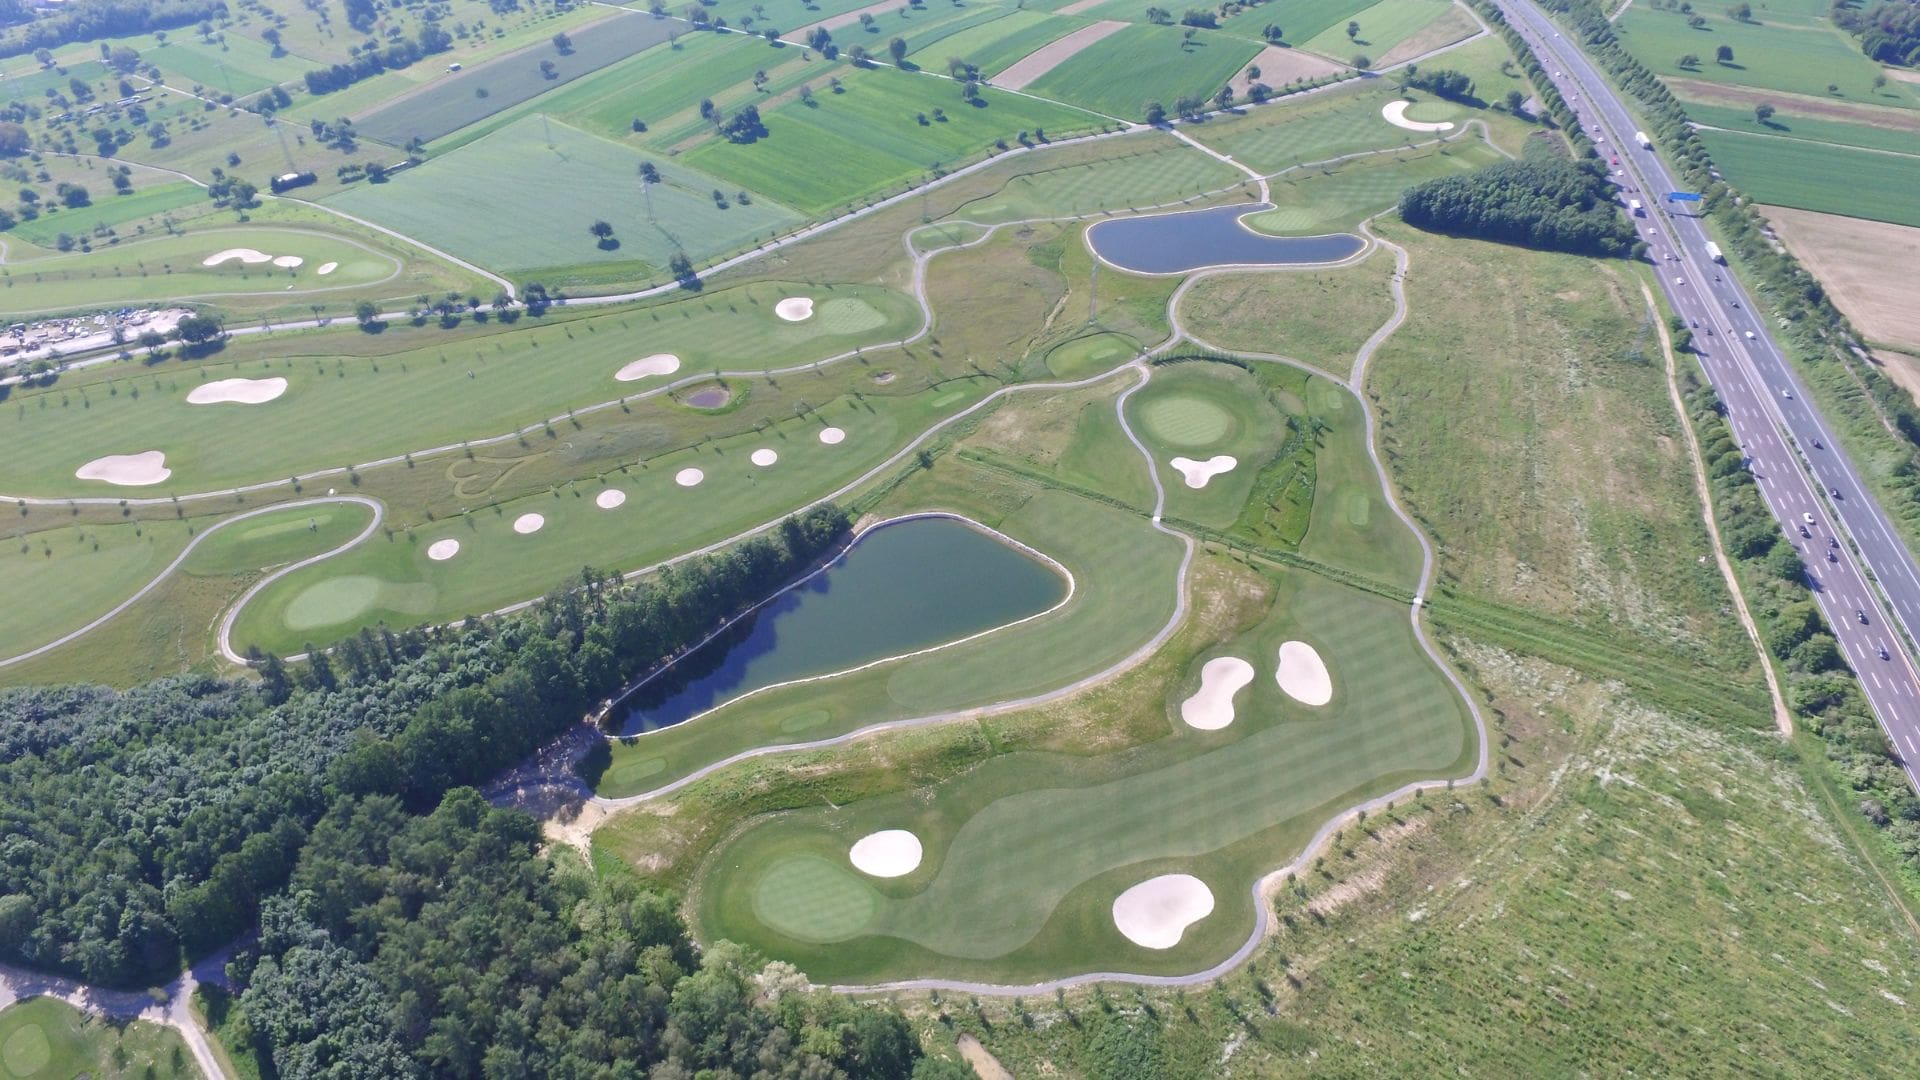 Luftbildaufnahme nach der Fertigstellung einer schlüsselfertigen Golfanlage in Karlsruhe.